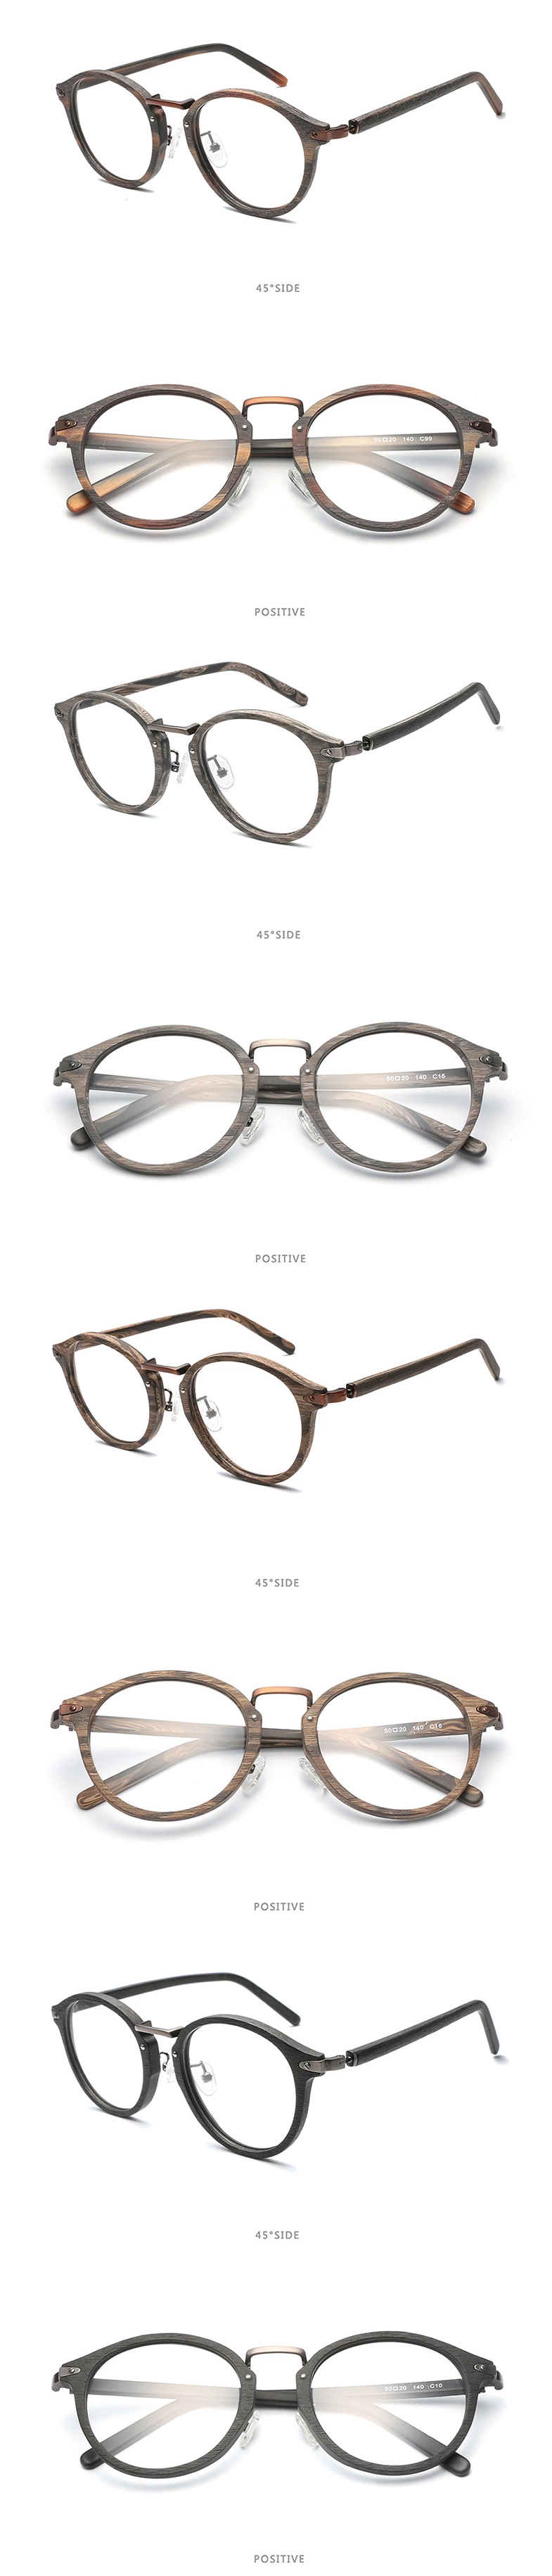 Fashion Trend Popular Rimless Optical Glasses Frame Lens Glasses for Men and Women Optic Acetate Prescription Eyeglasses